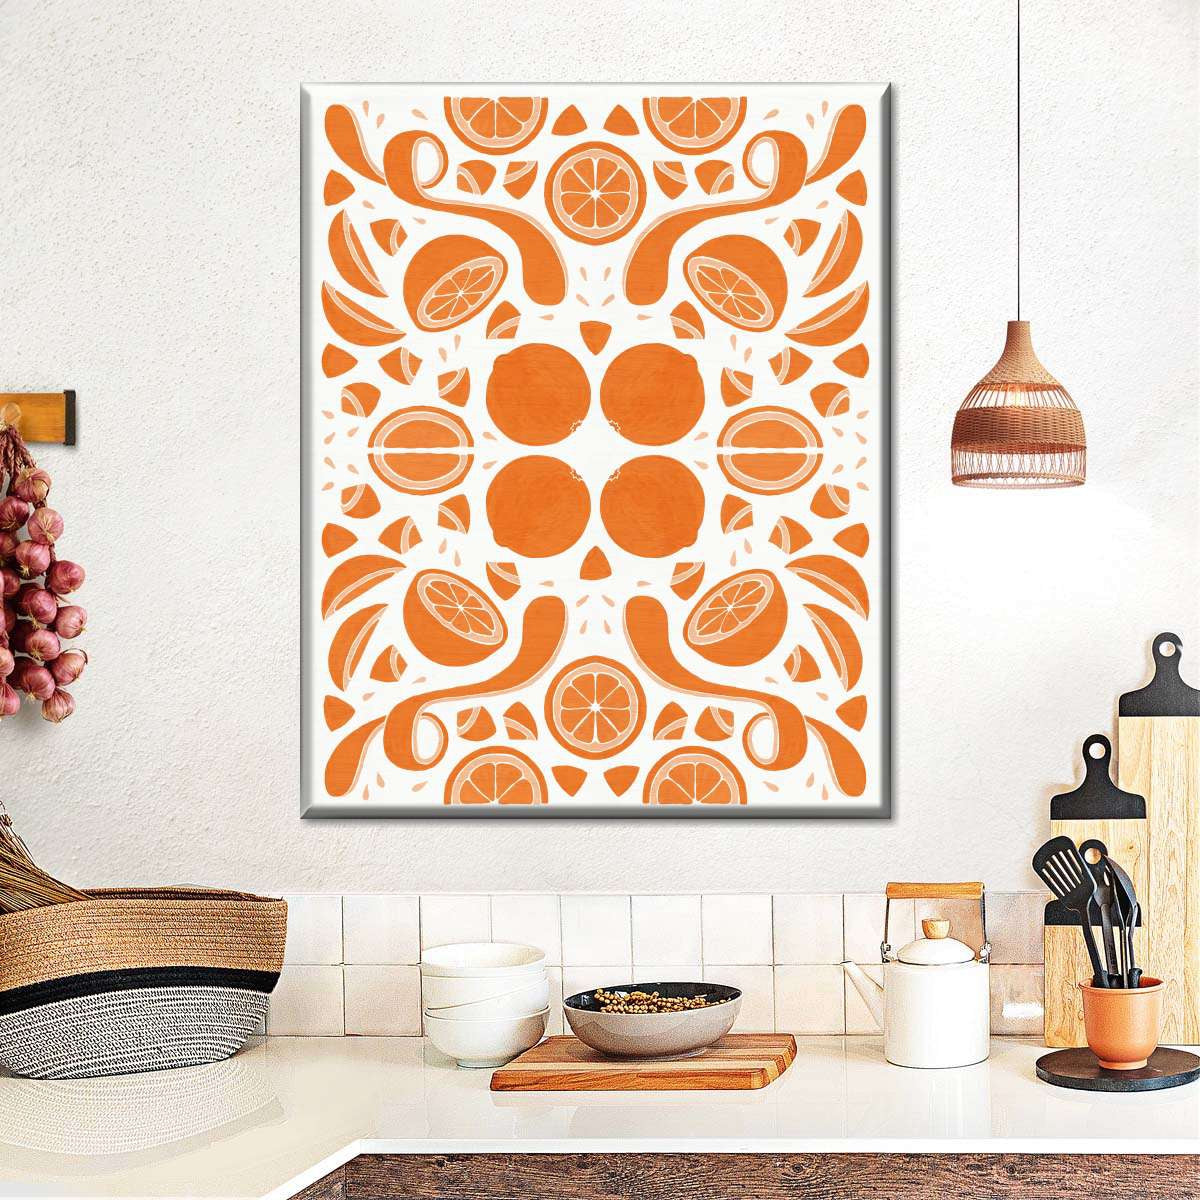 Best Kitchen Orange Wall Ideas